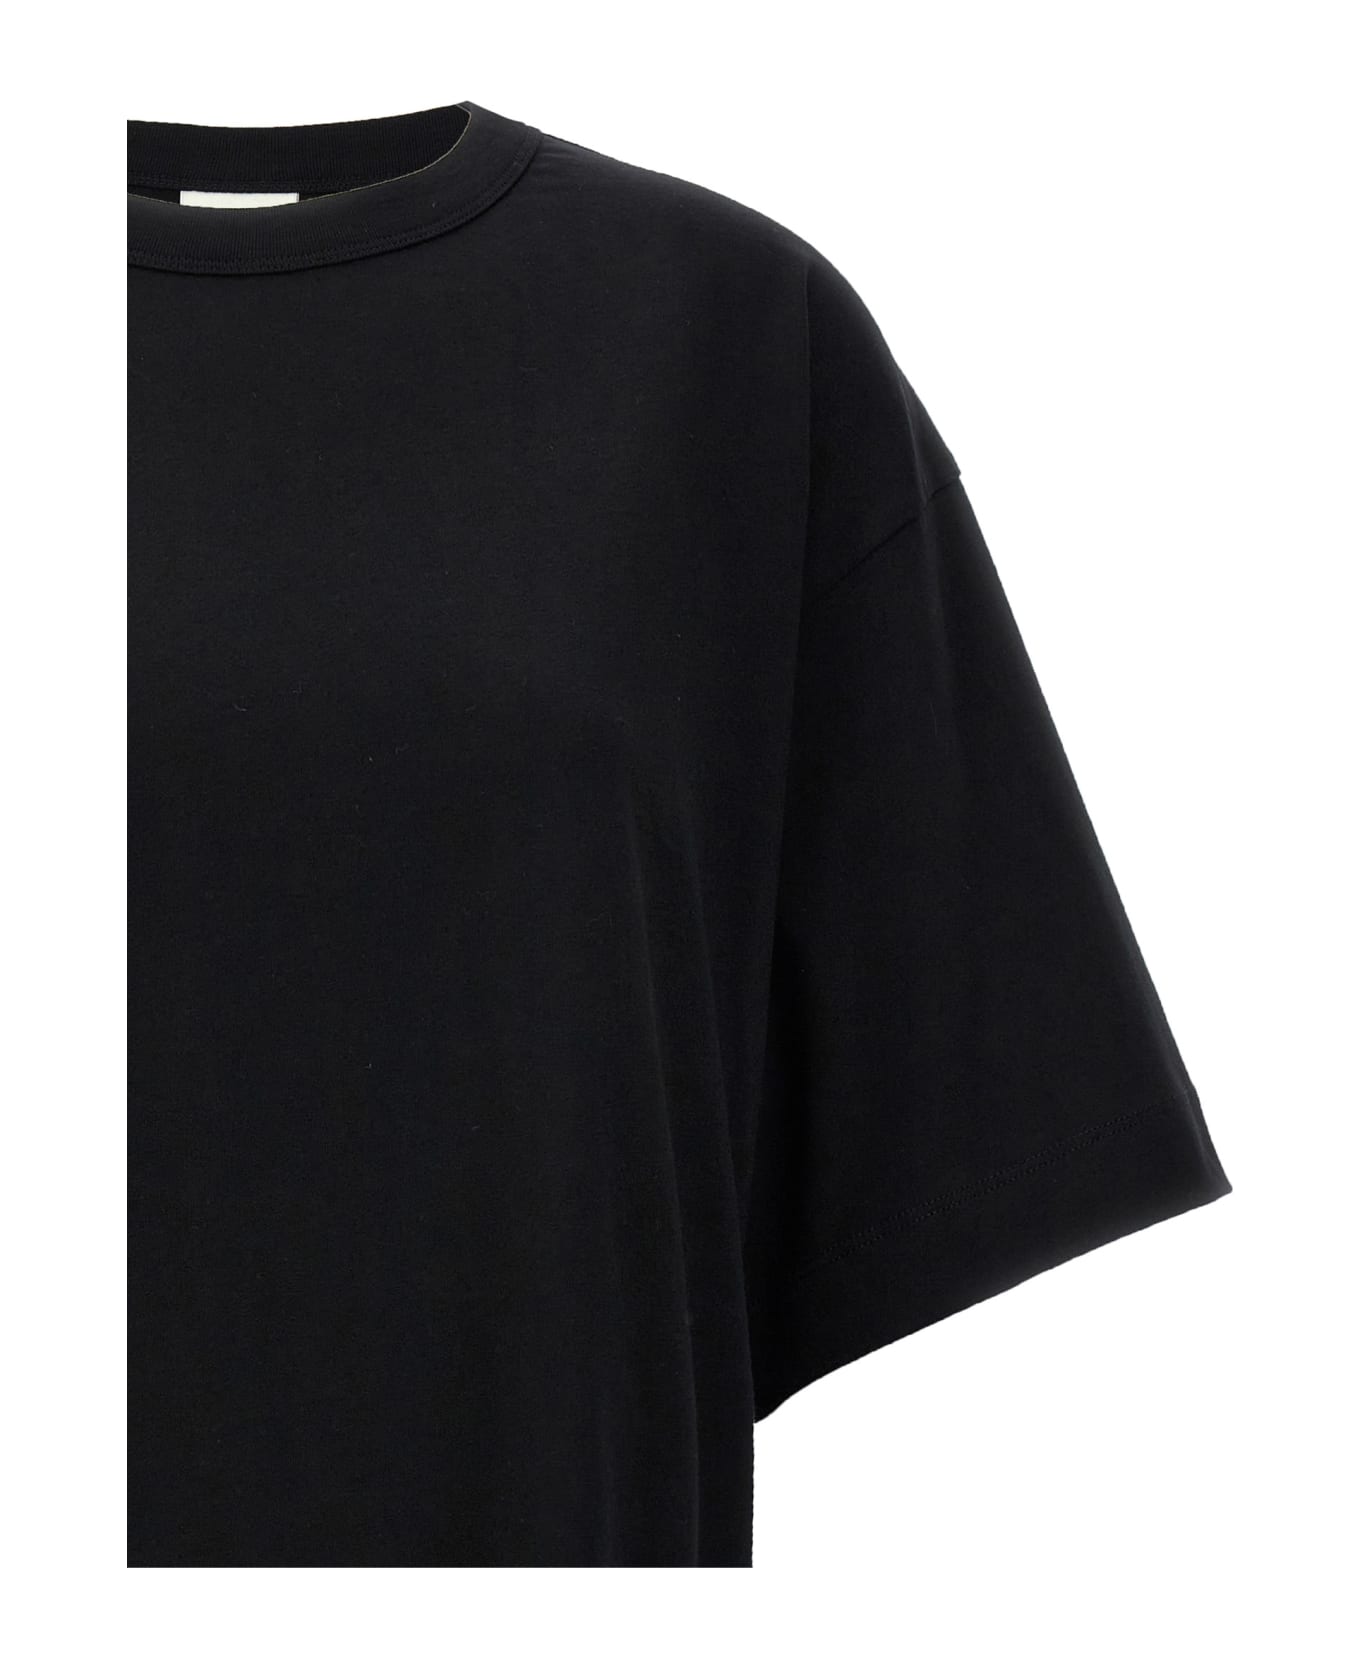 Dries Van Noten 'hegels' T-shirt - Black Tシャツ